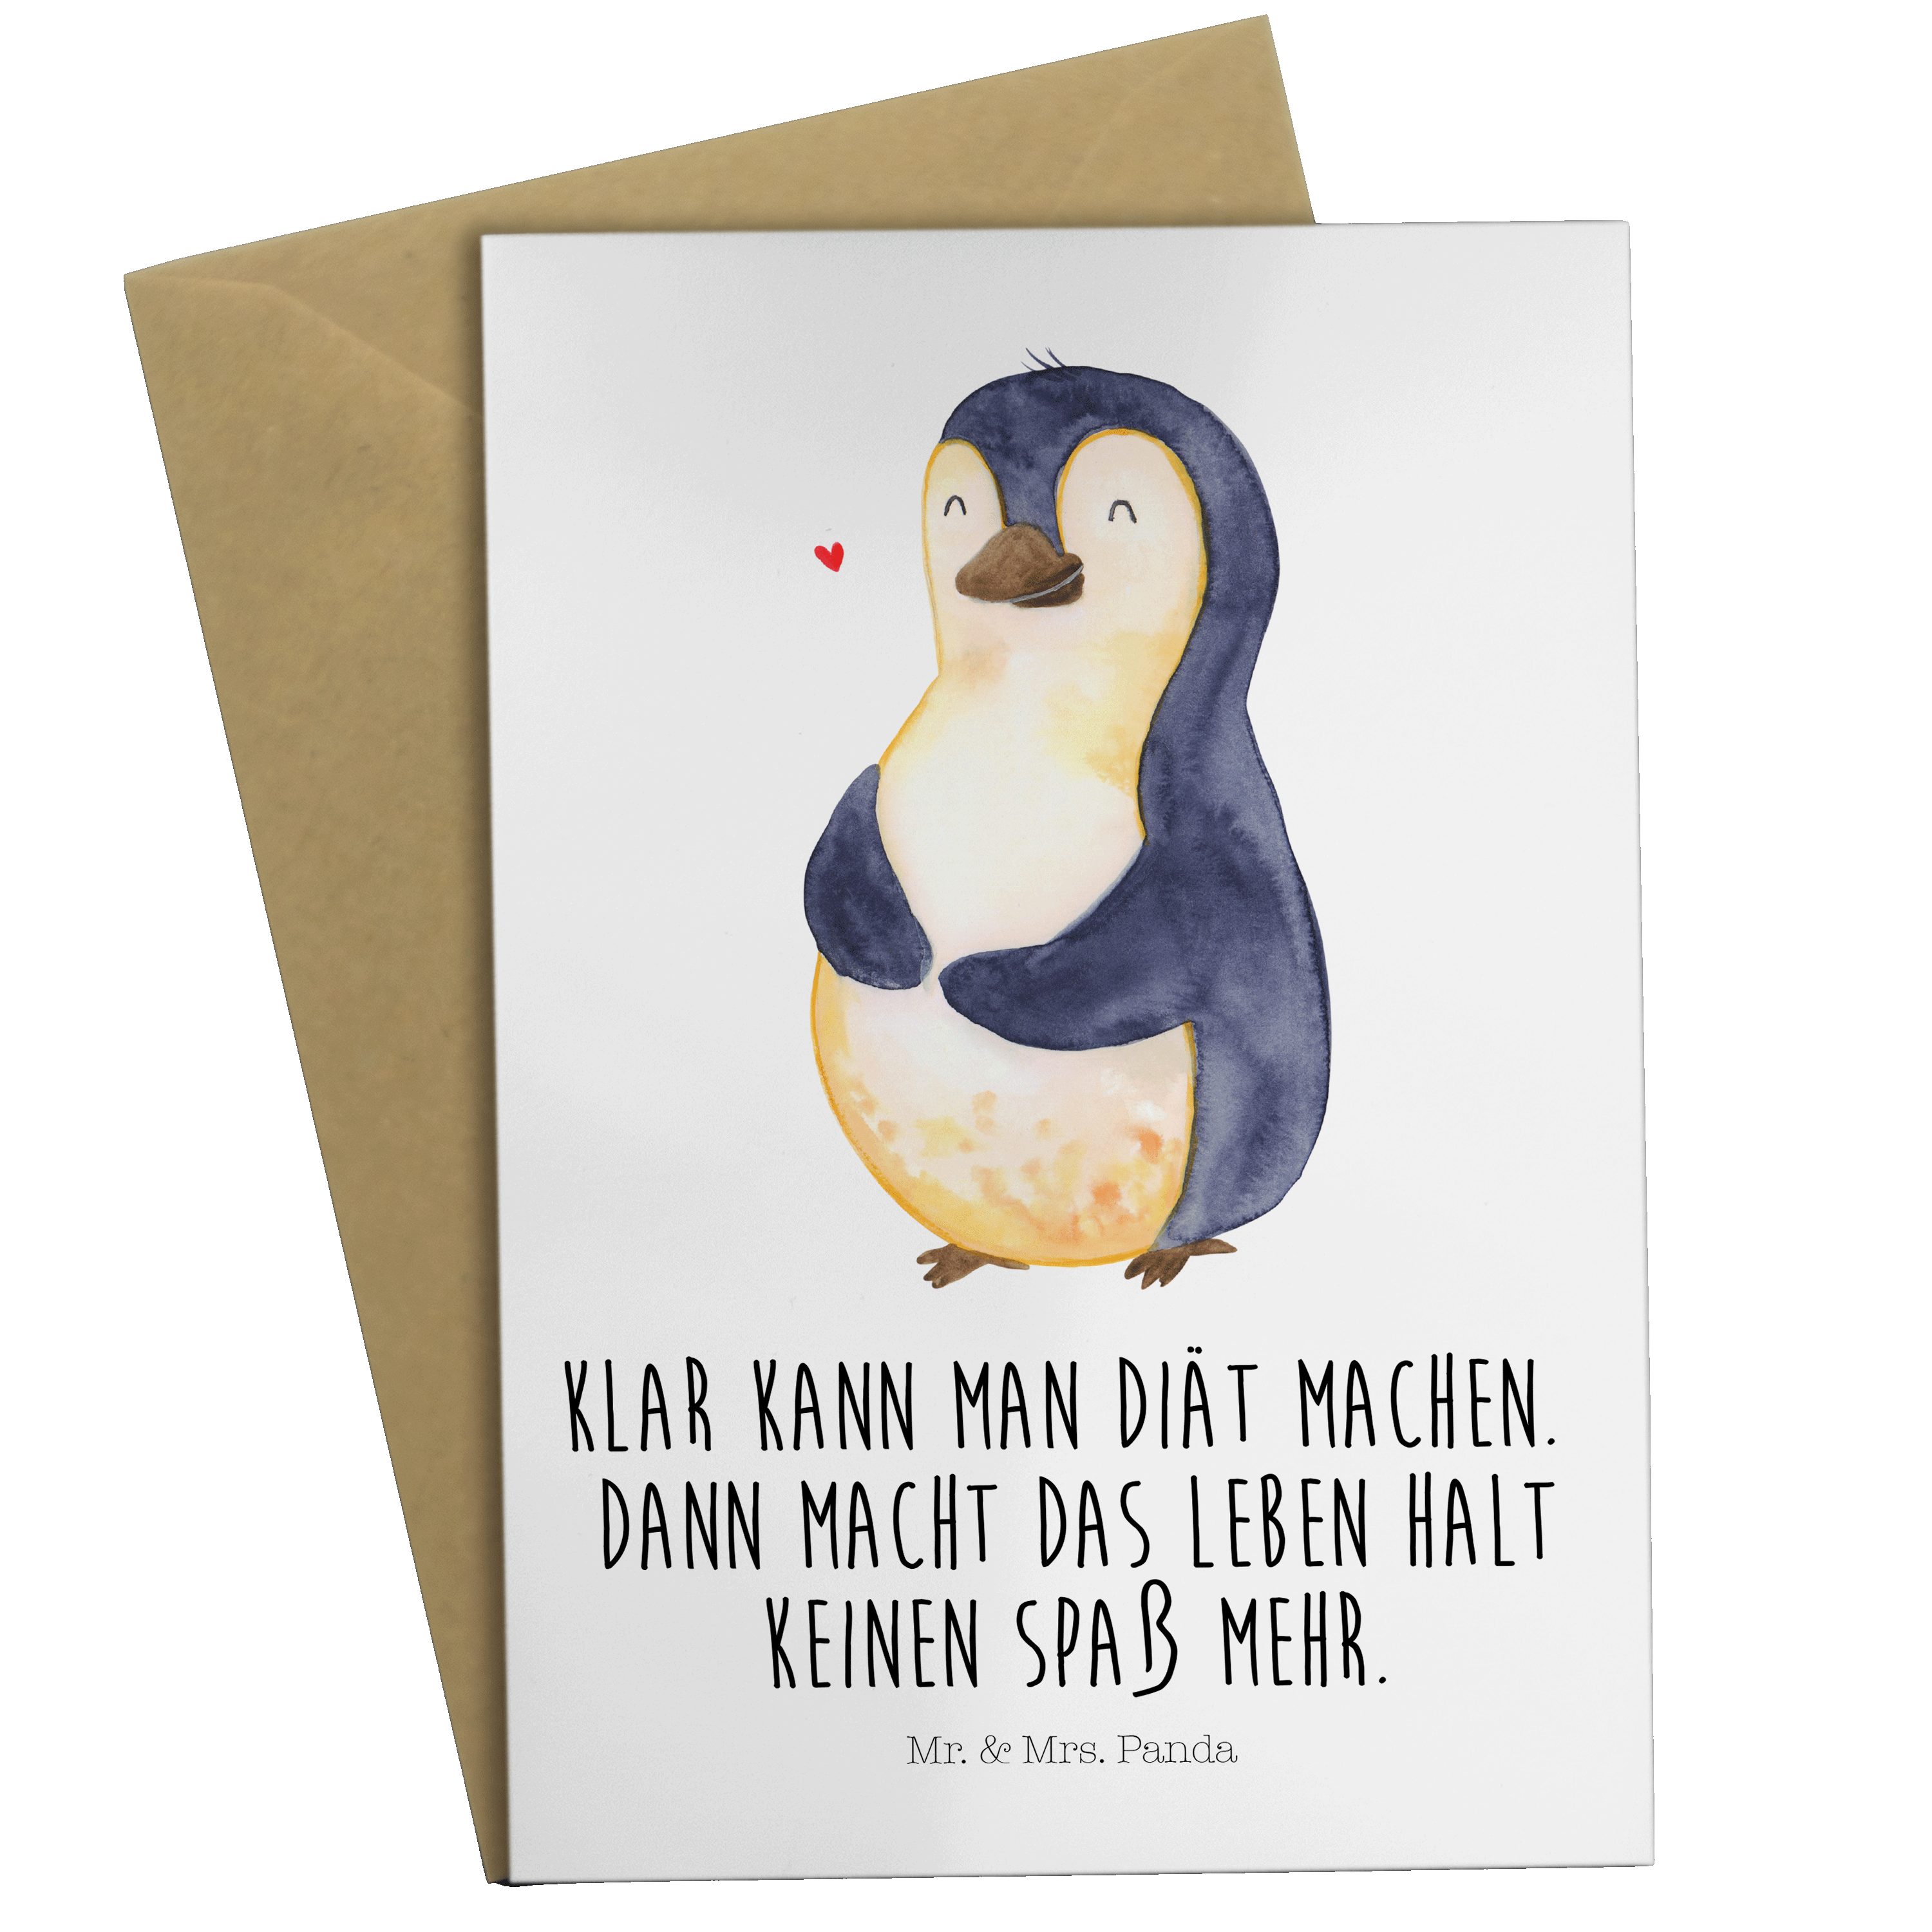 Mr. & Mrs. Panda Grußkarte Pinguin Diät - Weiß - Geschenk, dick, Hochzeitskarte, Bauch, Abspecke, Hochwertiger Karton